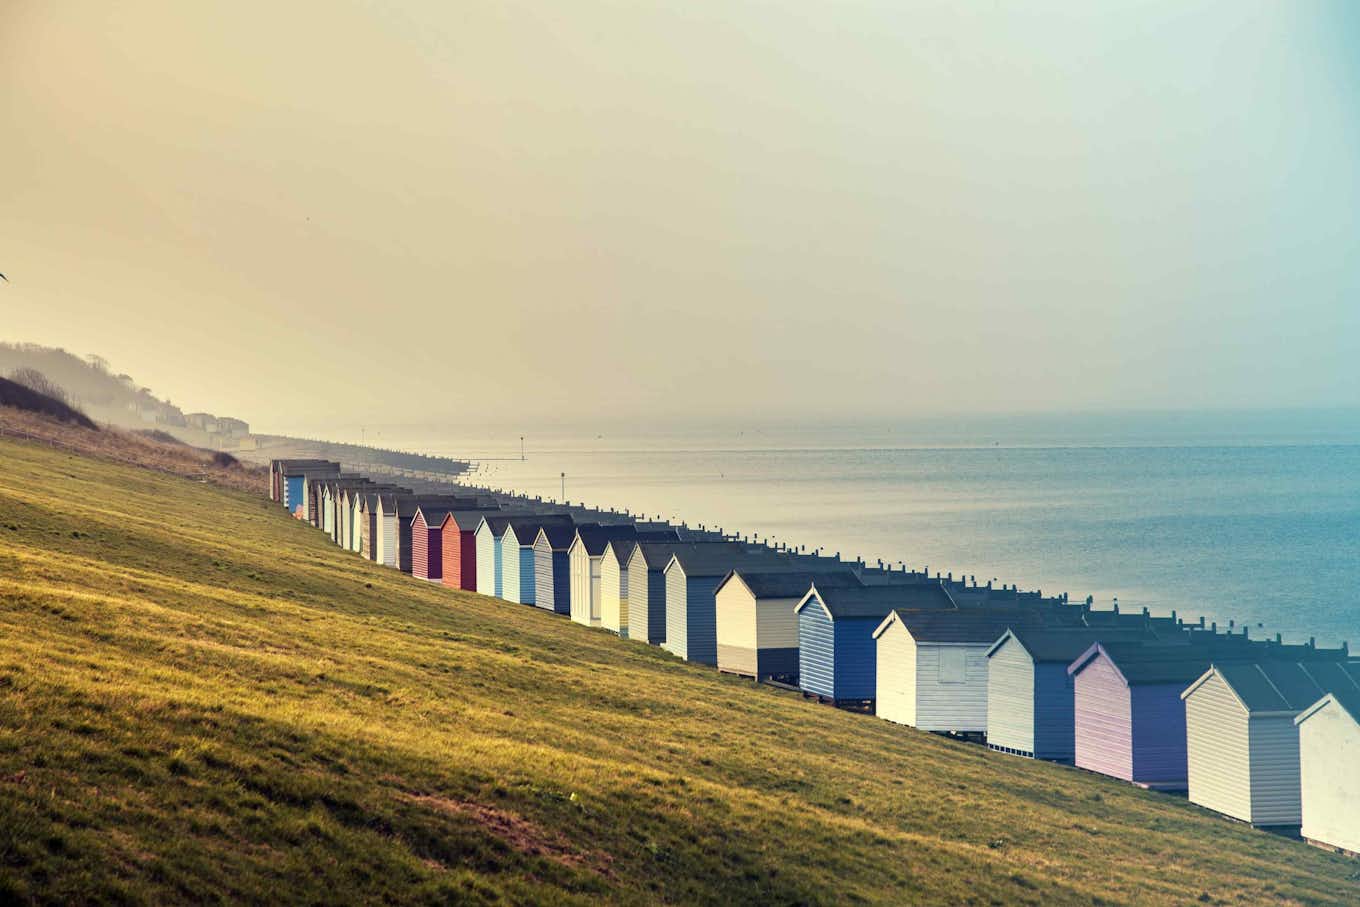 Multiple colourful houses near the ocean